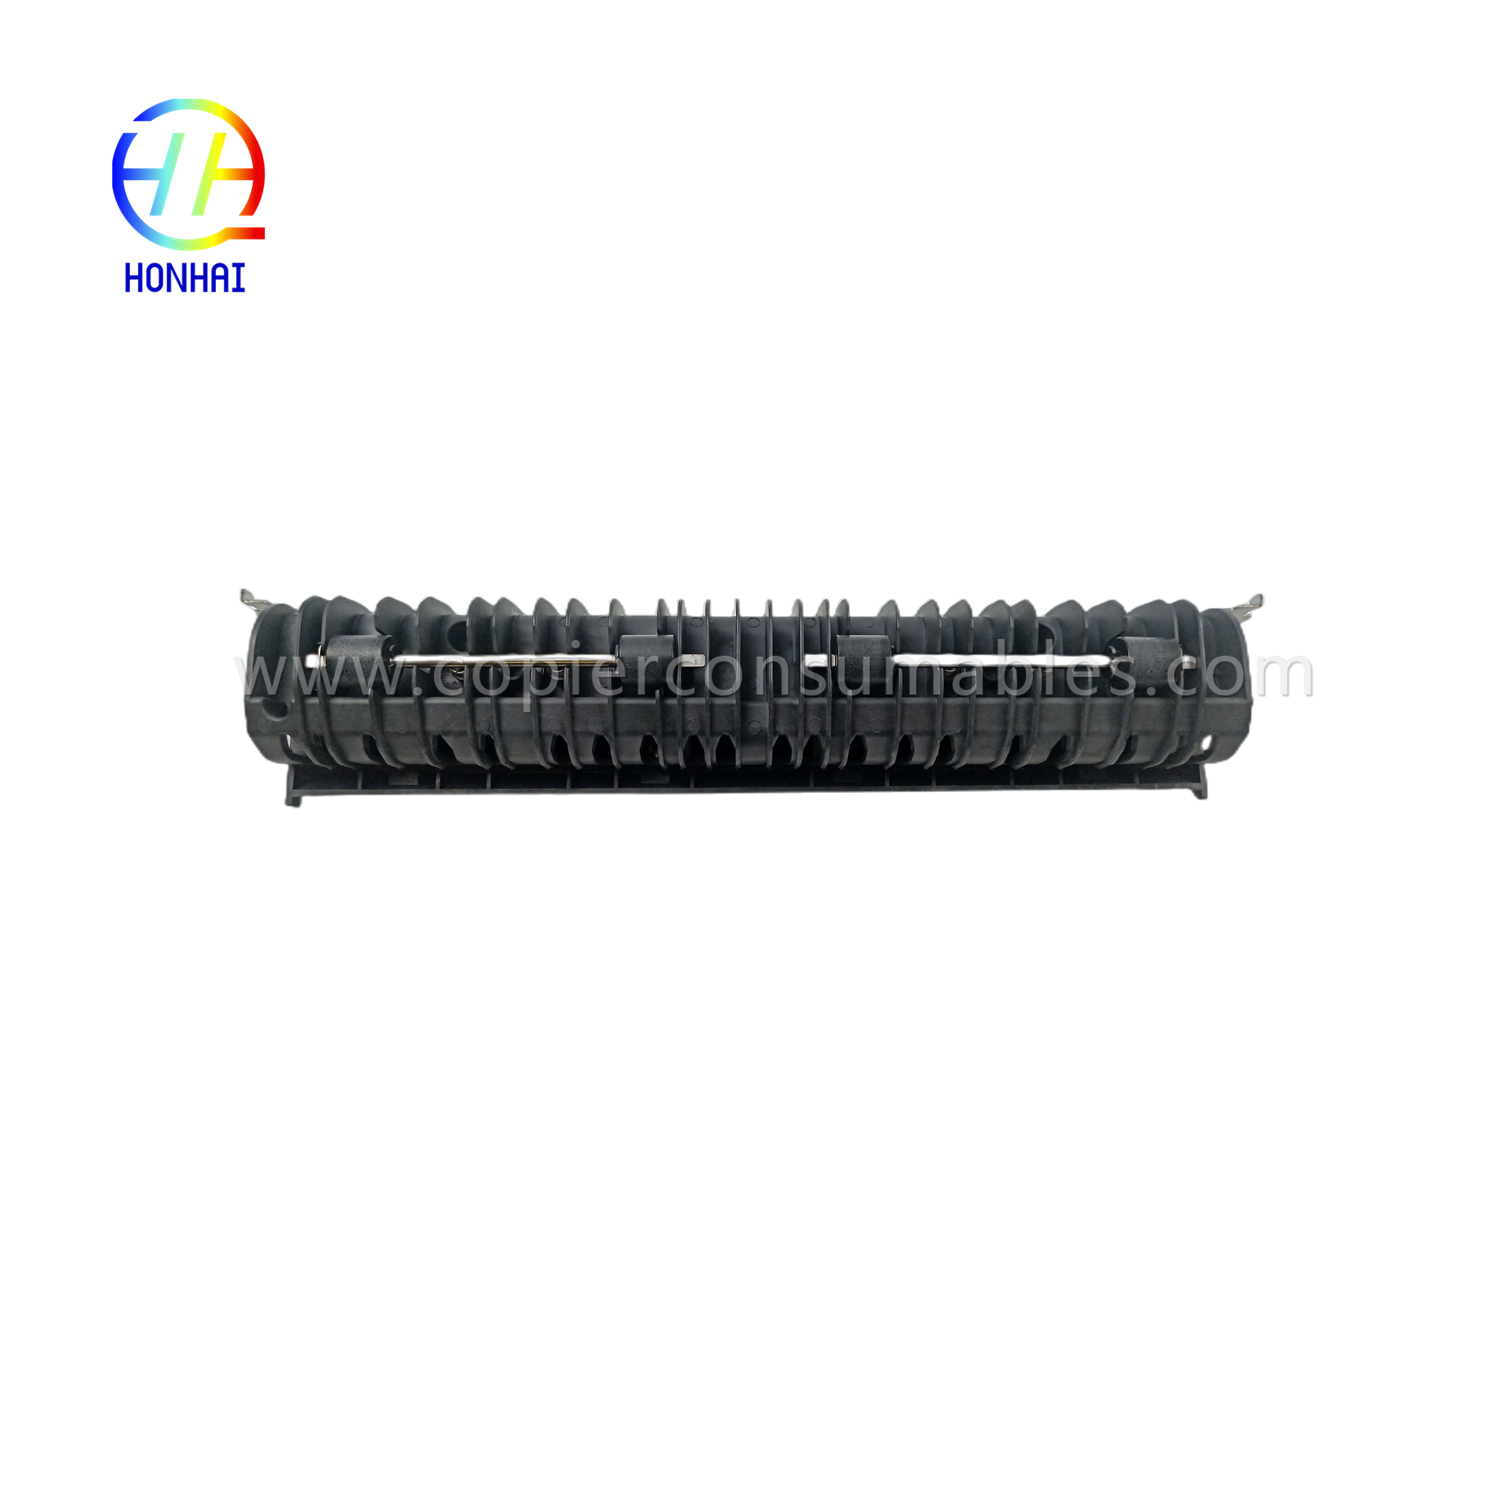 Fuser Unit Rear Guide for Kyocera 302GR93182 KM-3050 4050 5050 TASKalfa 420i 520i (2)